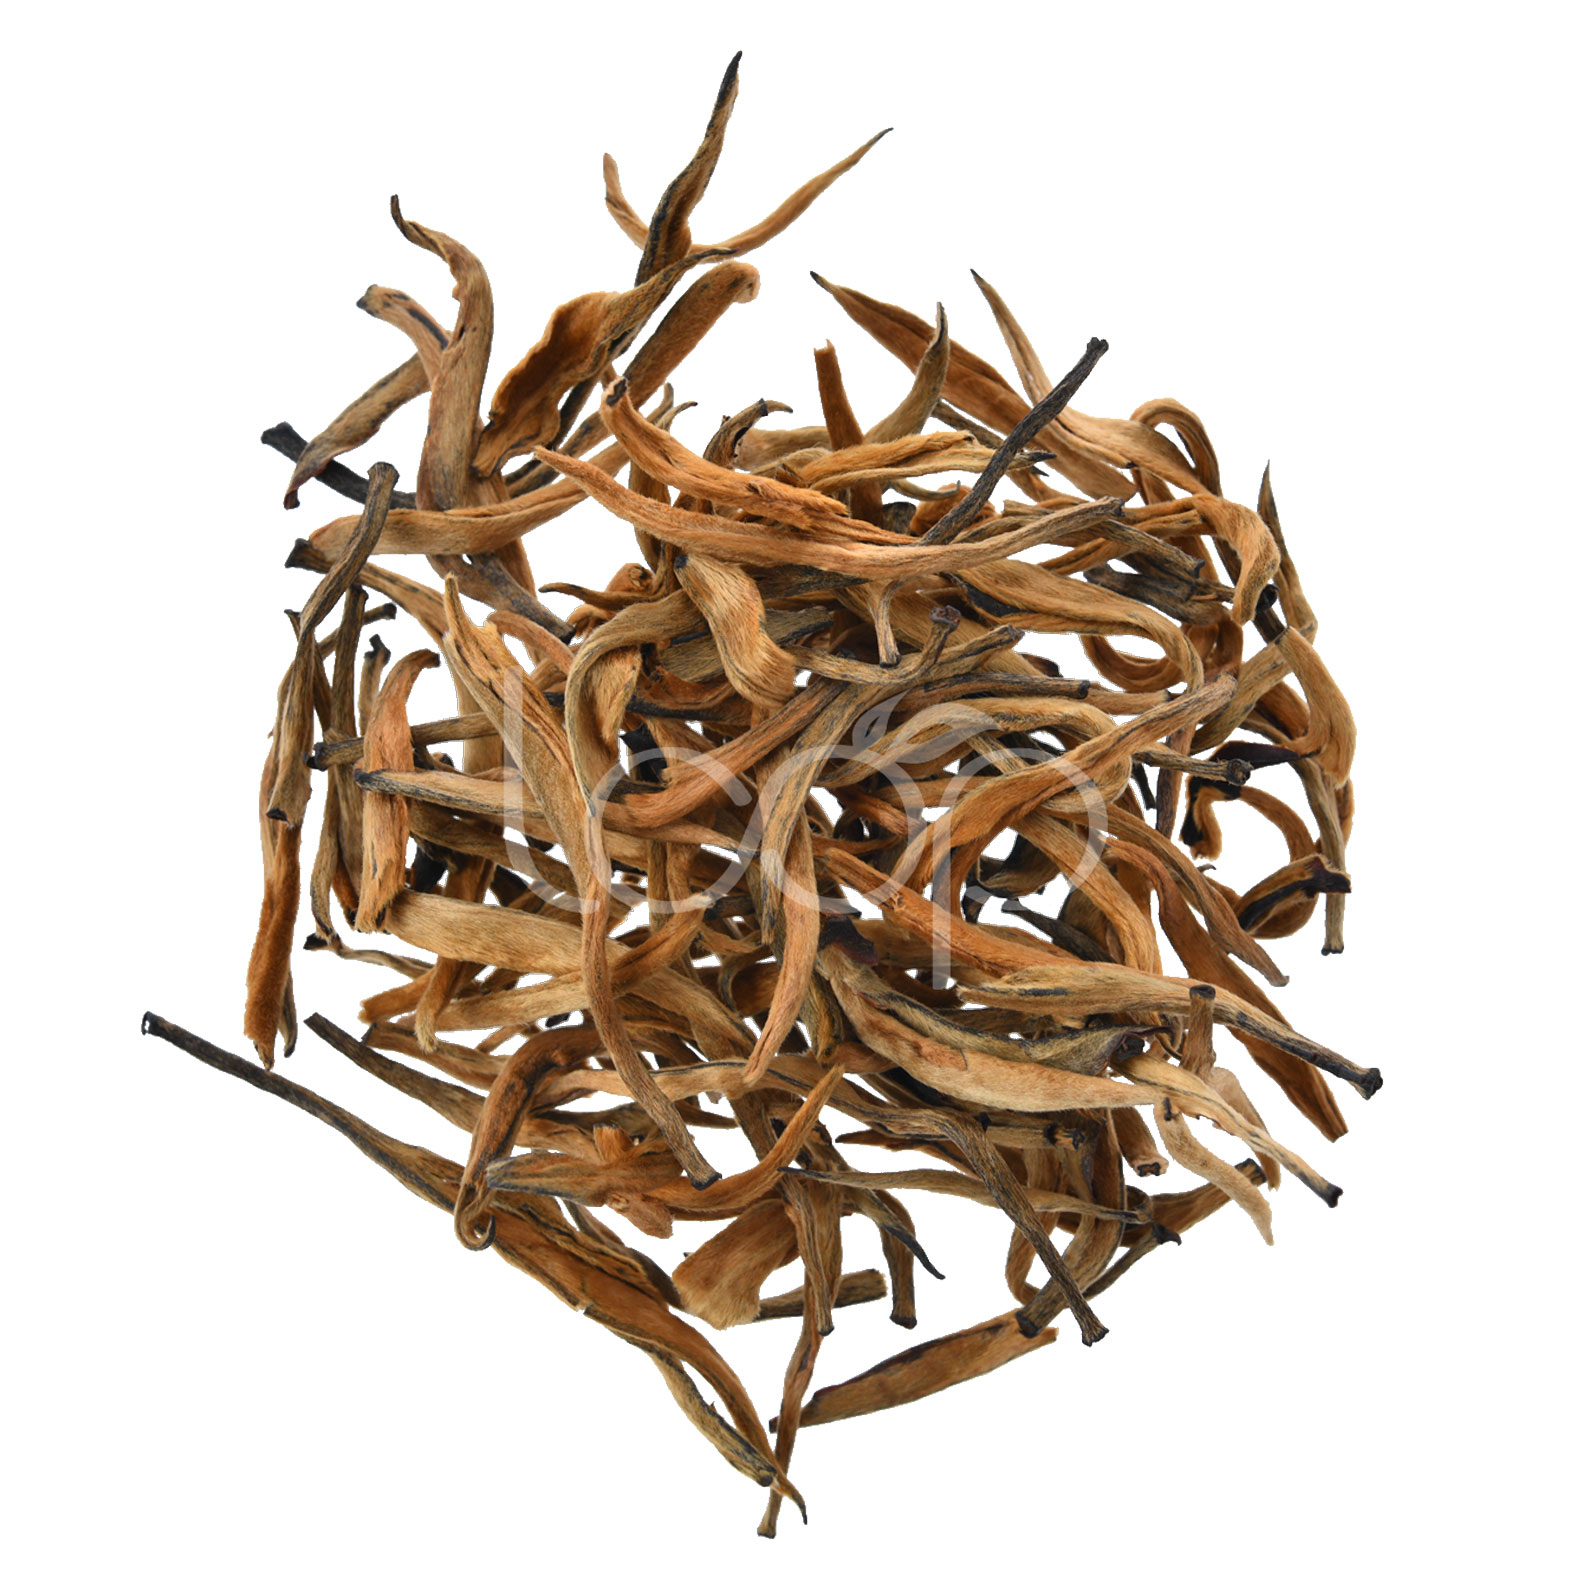 Hot New Products Organic Instant Black Tea Powder - China Black Tea Golden Bud #2 – Goodtea